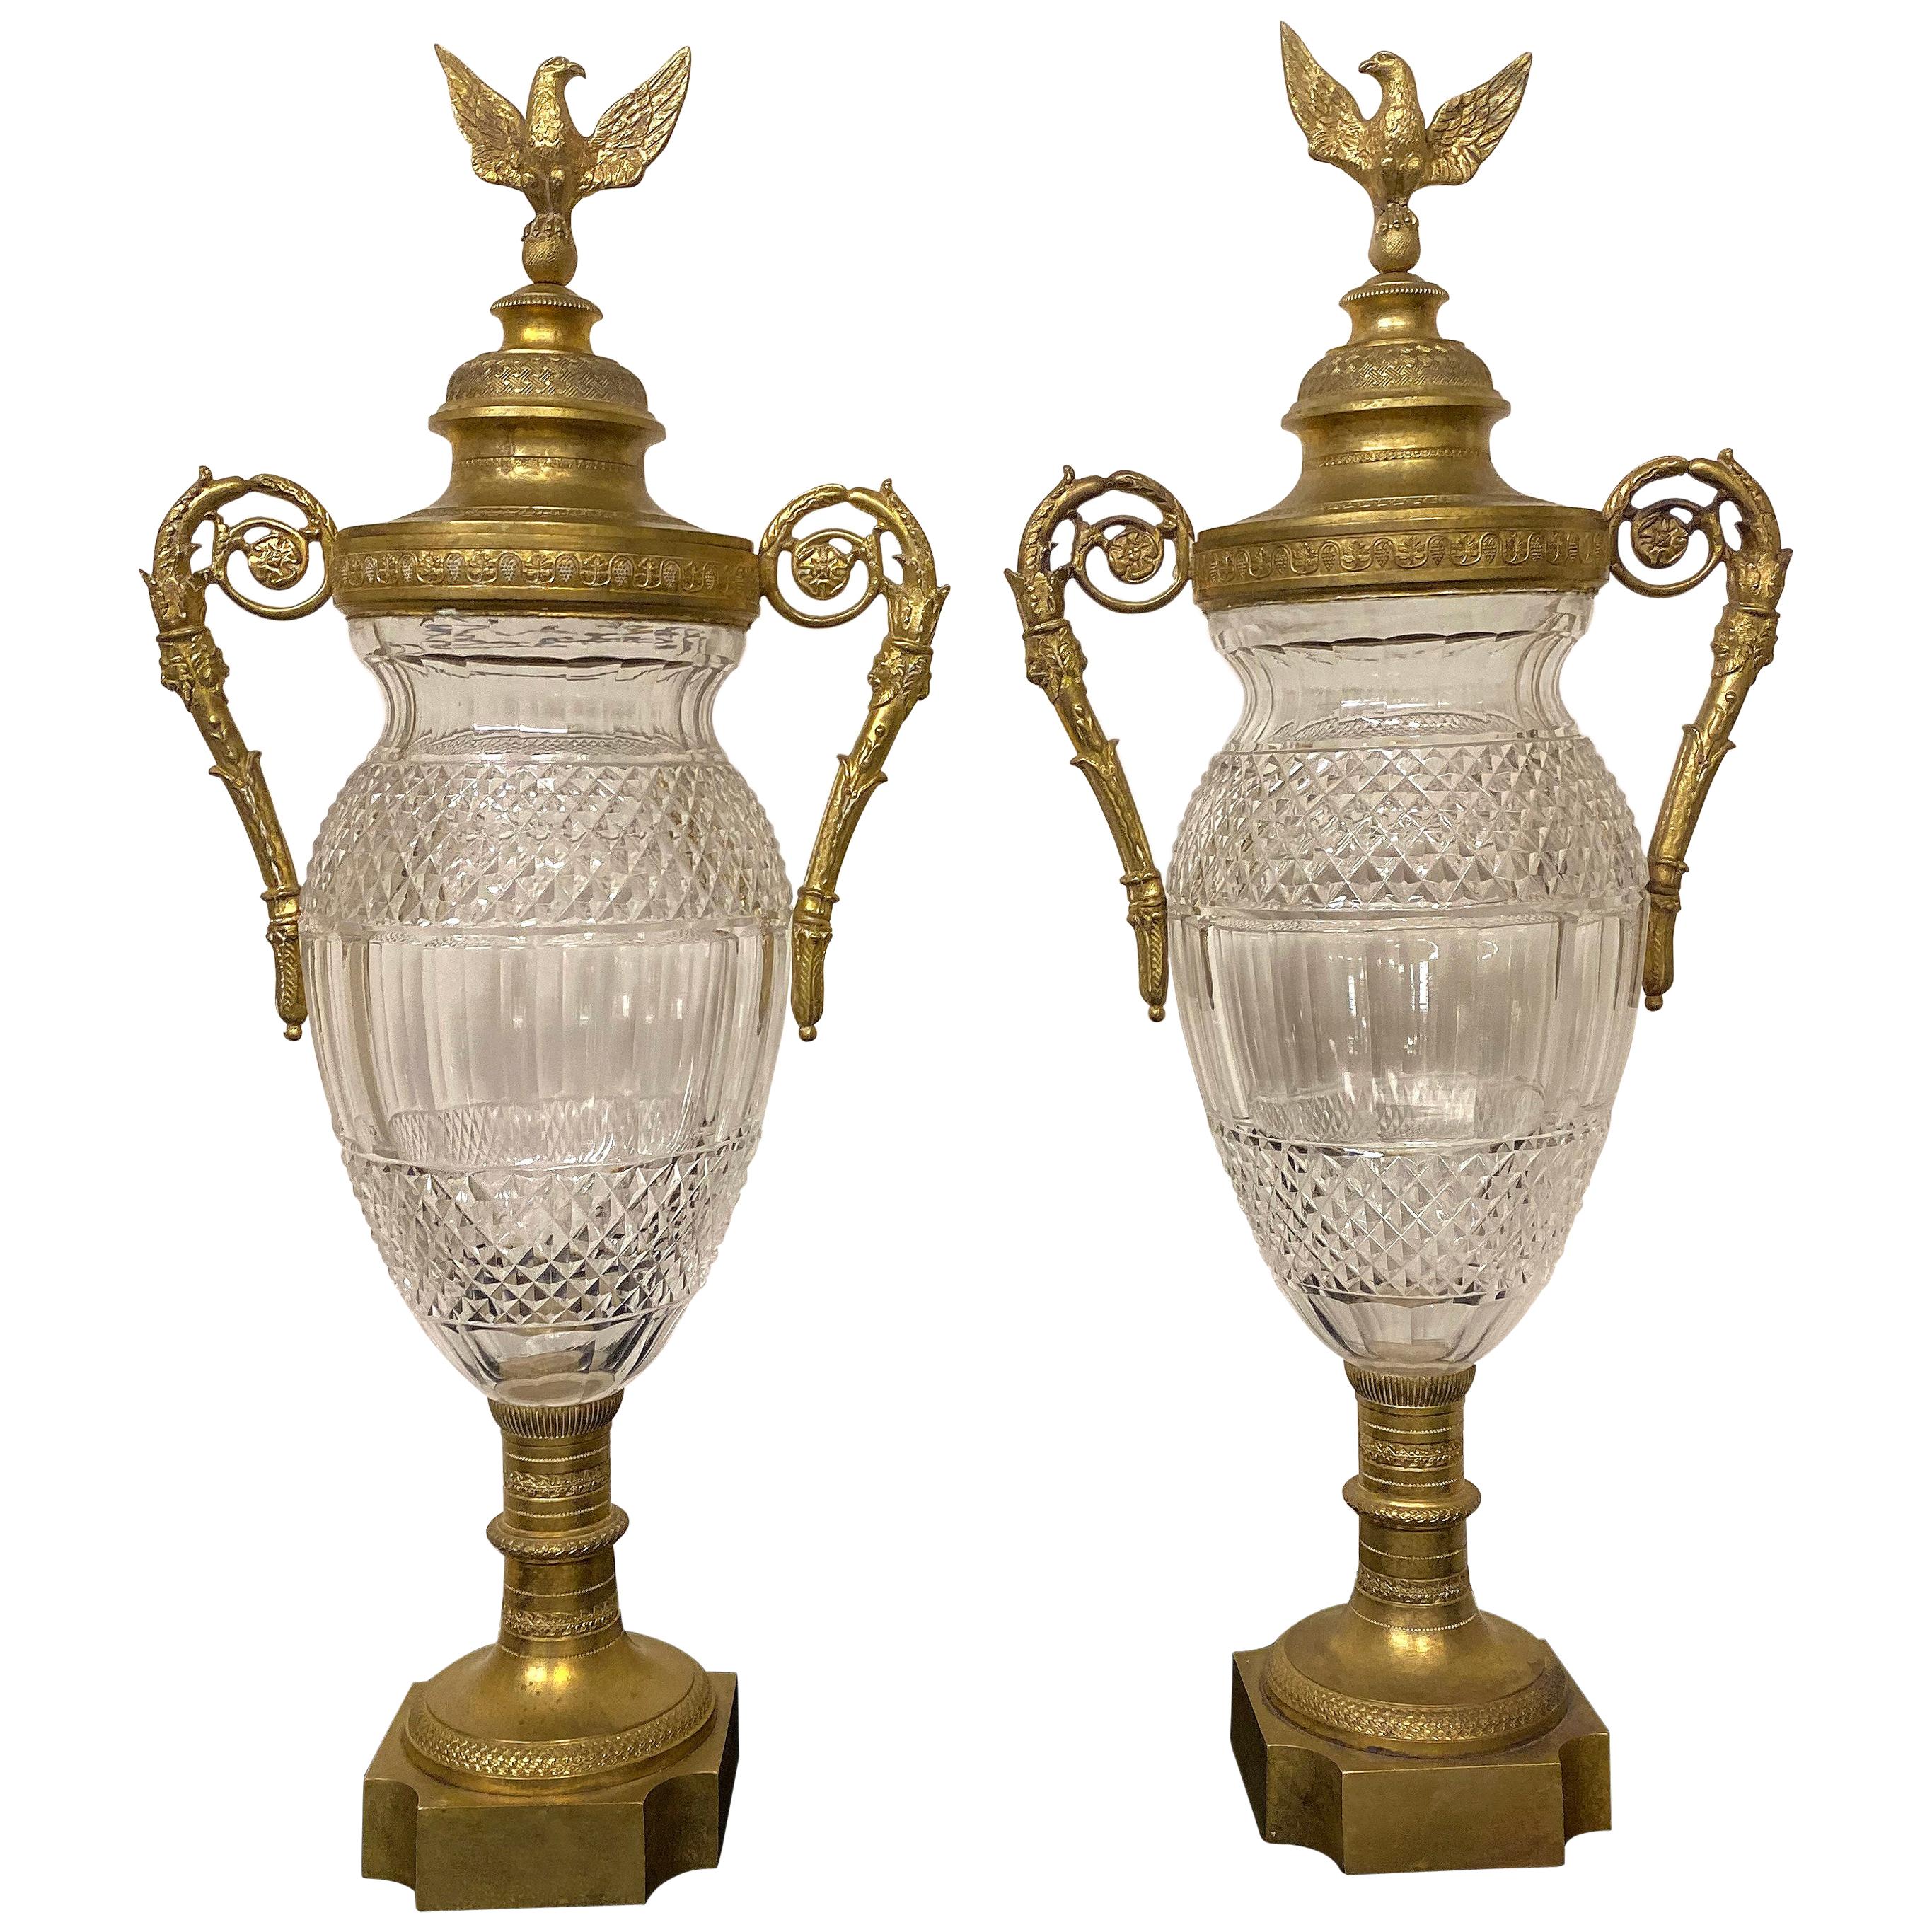 Schönes Paar Vasen im Empire-Stil aus vergoldeter Bronze und geschliffenem Kristall aus dem späten 19. Jahrhundert